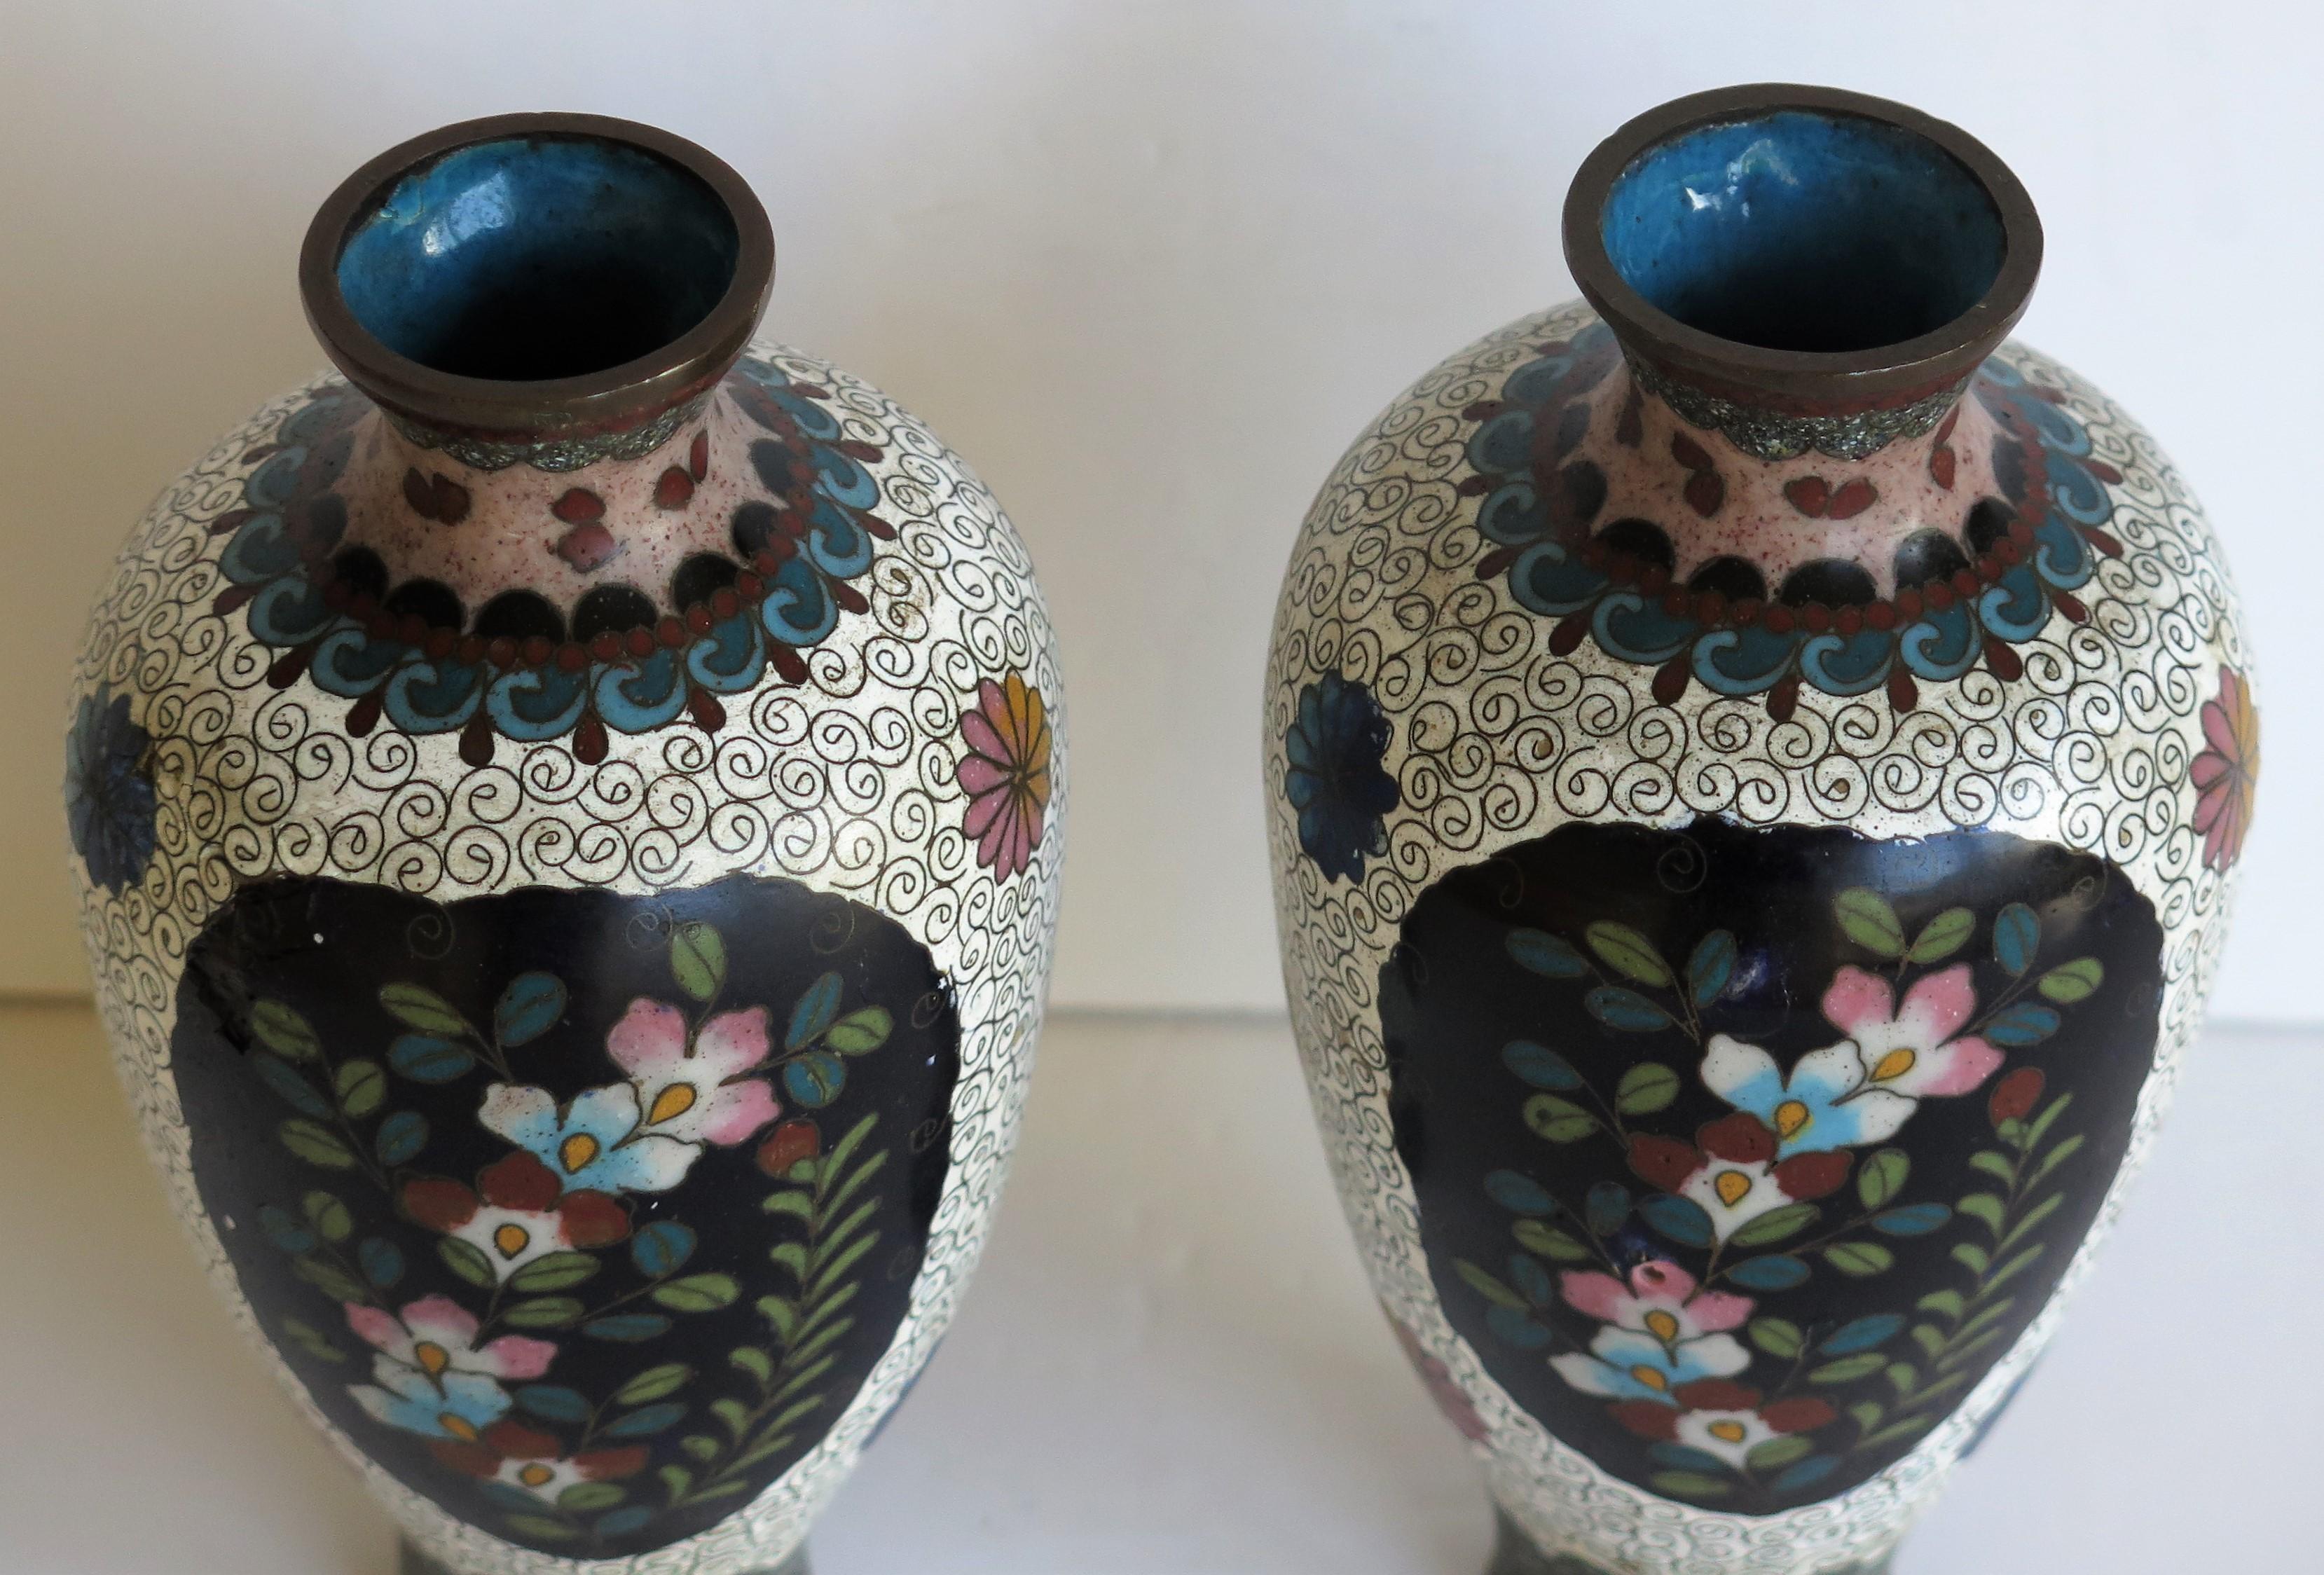 Japanese Cloisonné Vases Butterflies & Flowers, 19th Century Meiji Period, Pair For Sale 7